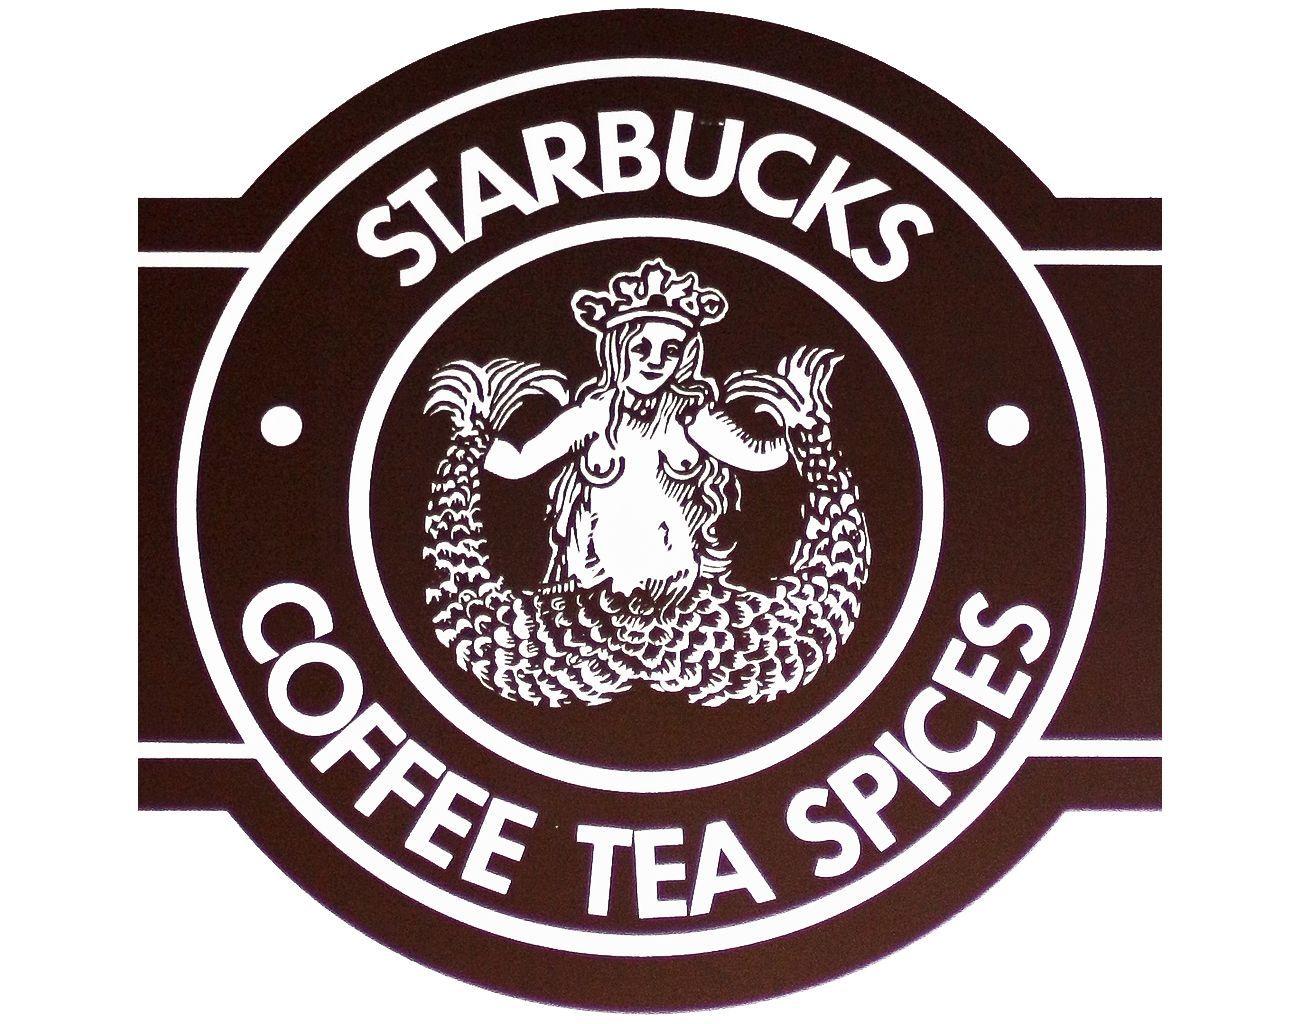 Old Starbucks Coffee Logo - old starbucks logo | All logos world | Pinterest | Starbucks logo ...